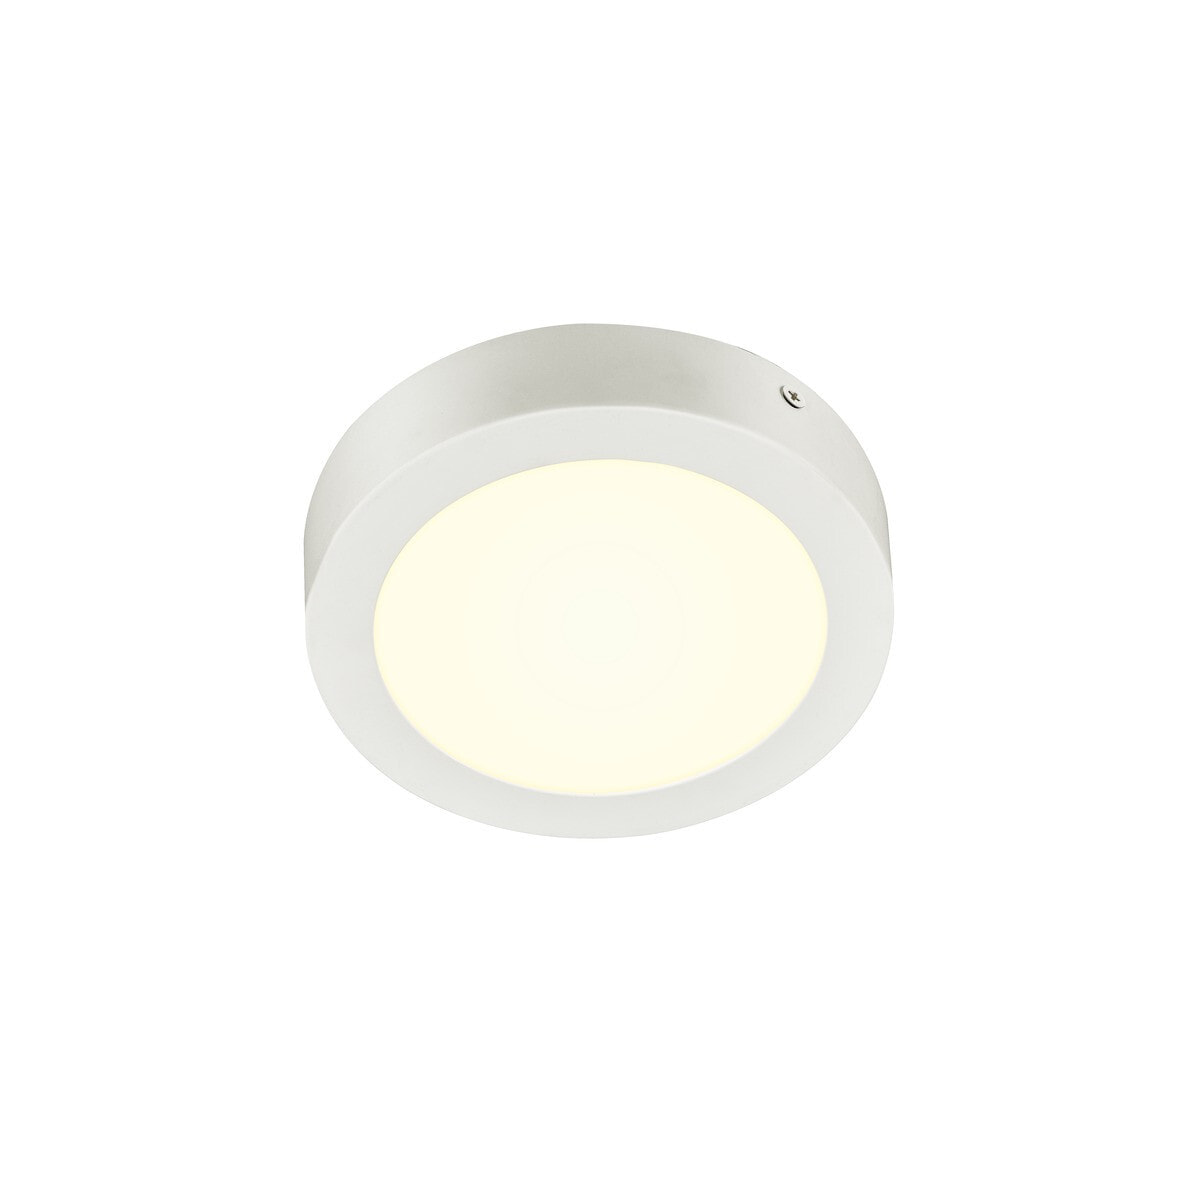 SLV Senser 18 CW - 1 bulb(s) - 4000 K - 990 lm - IP20 - White